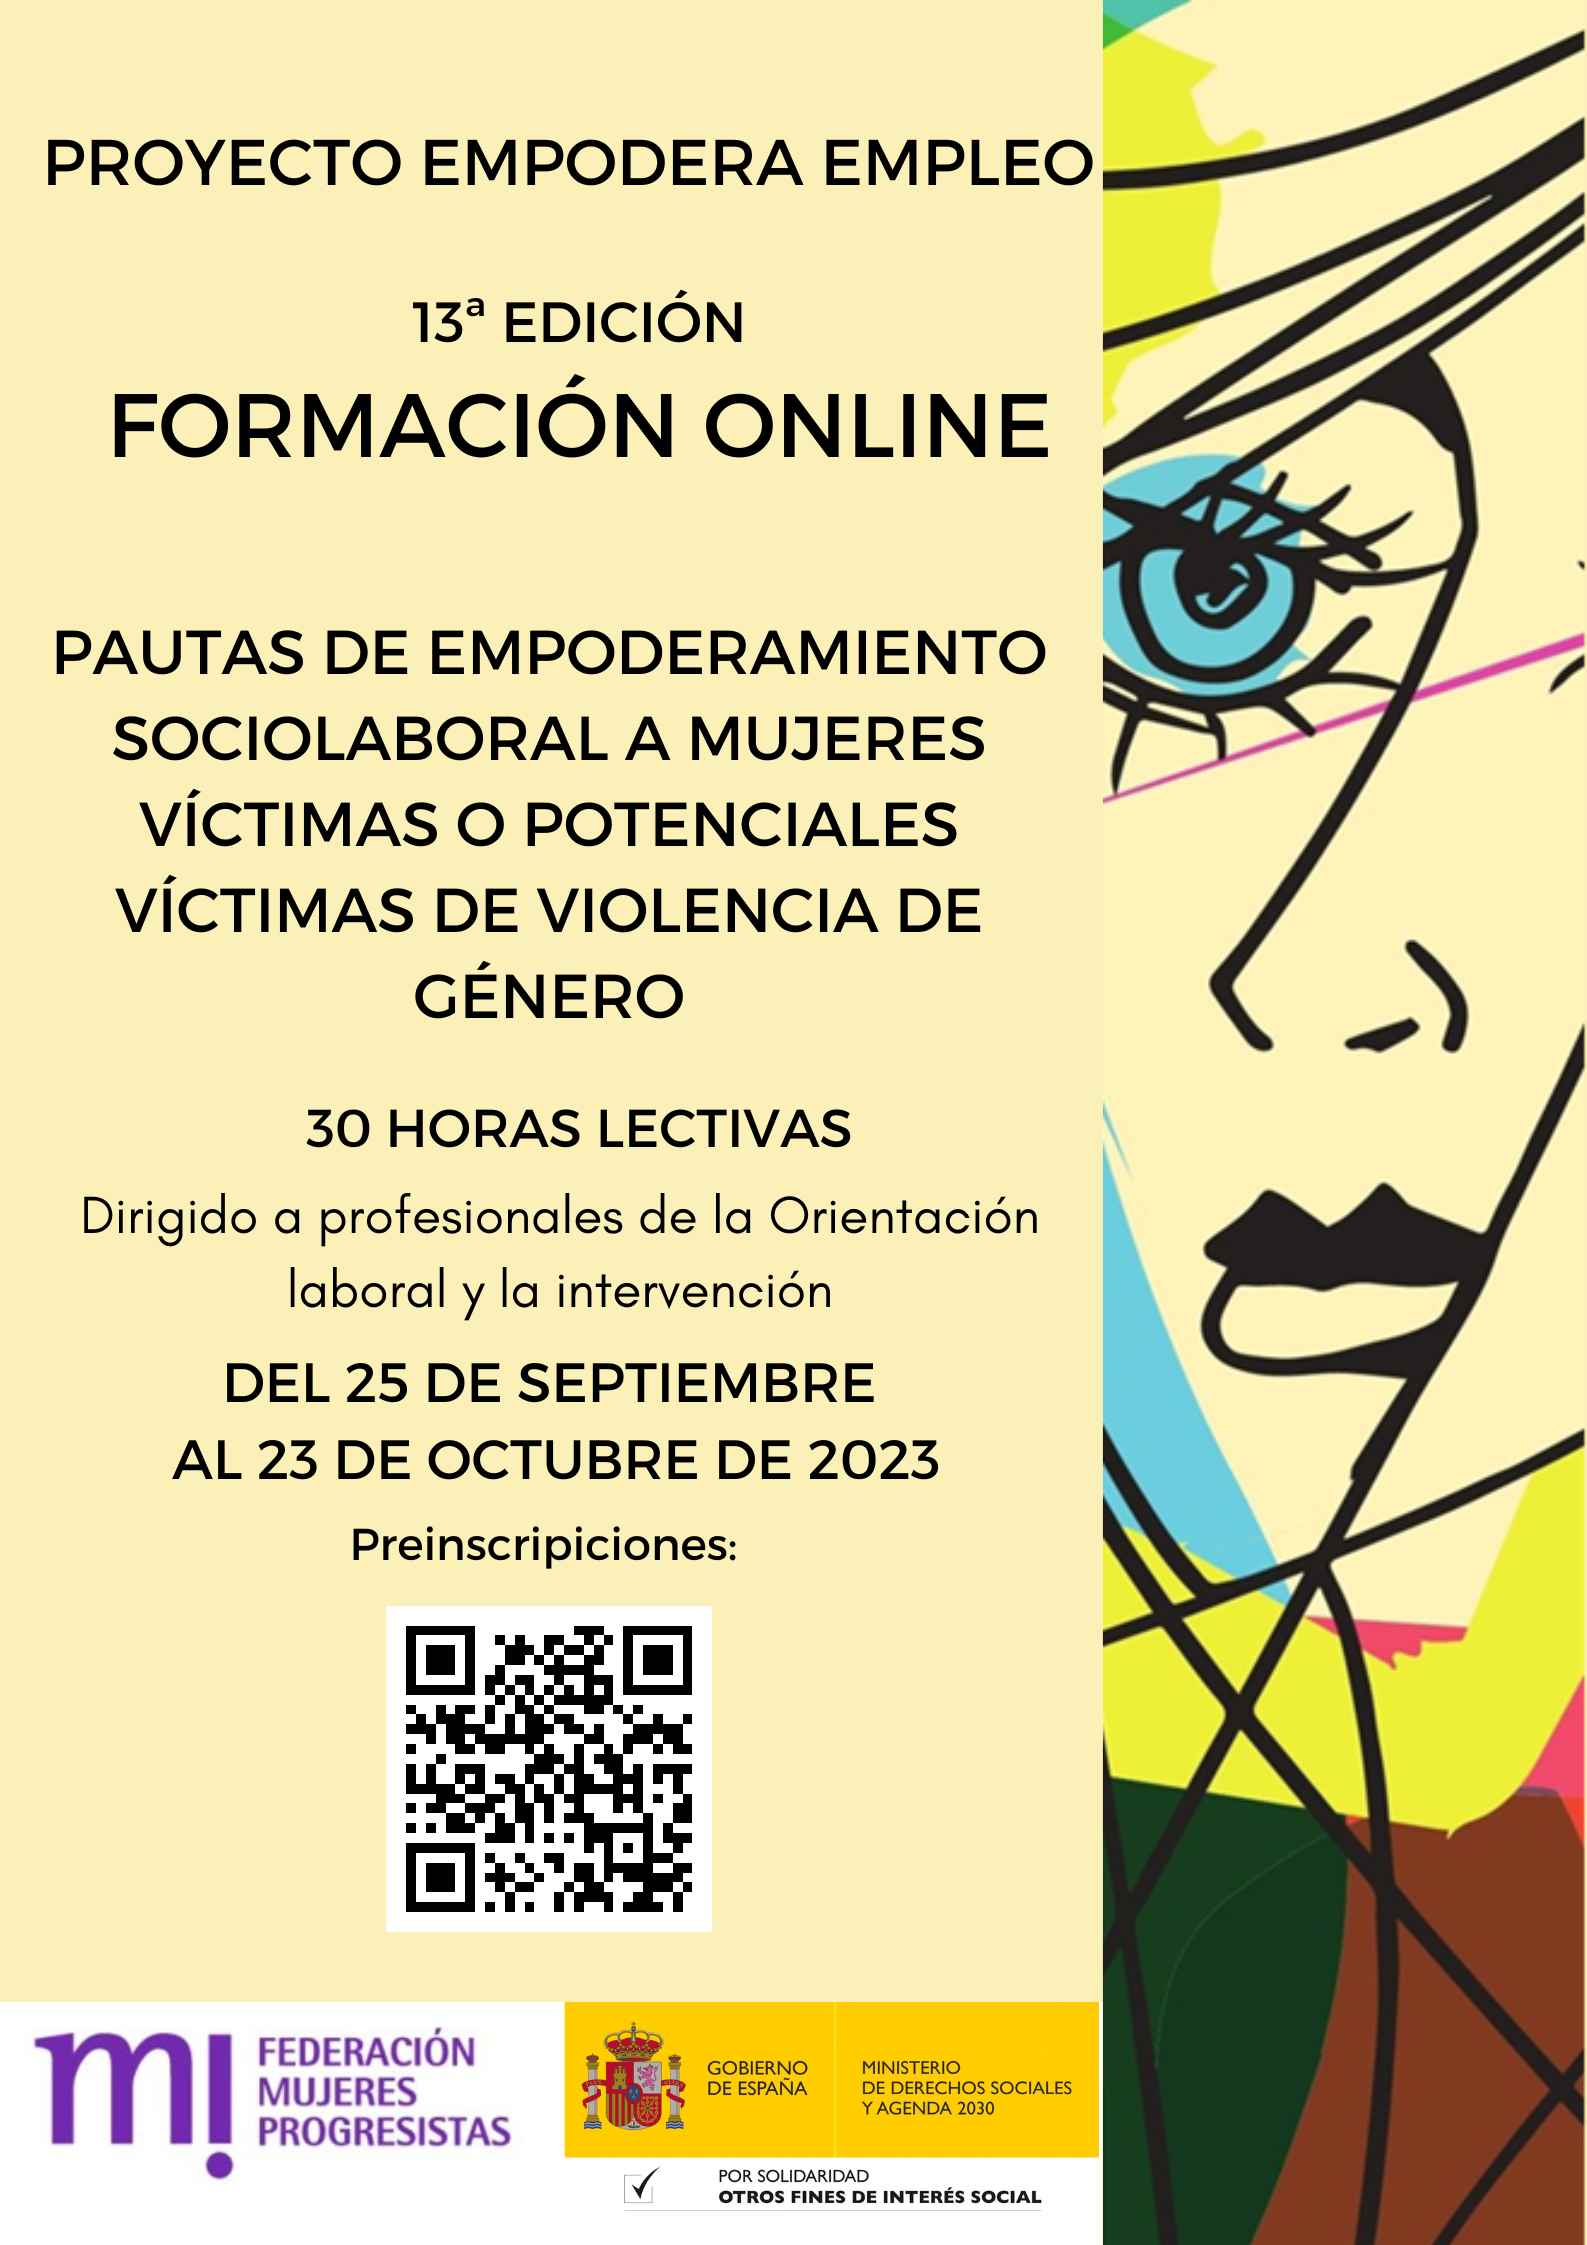 Course Image 13ª Edición. Pautas empoderamiento sociolaboral a mujeres víctimas y potenciales víctimas de violencia de género